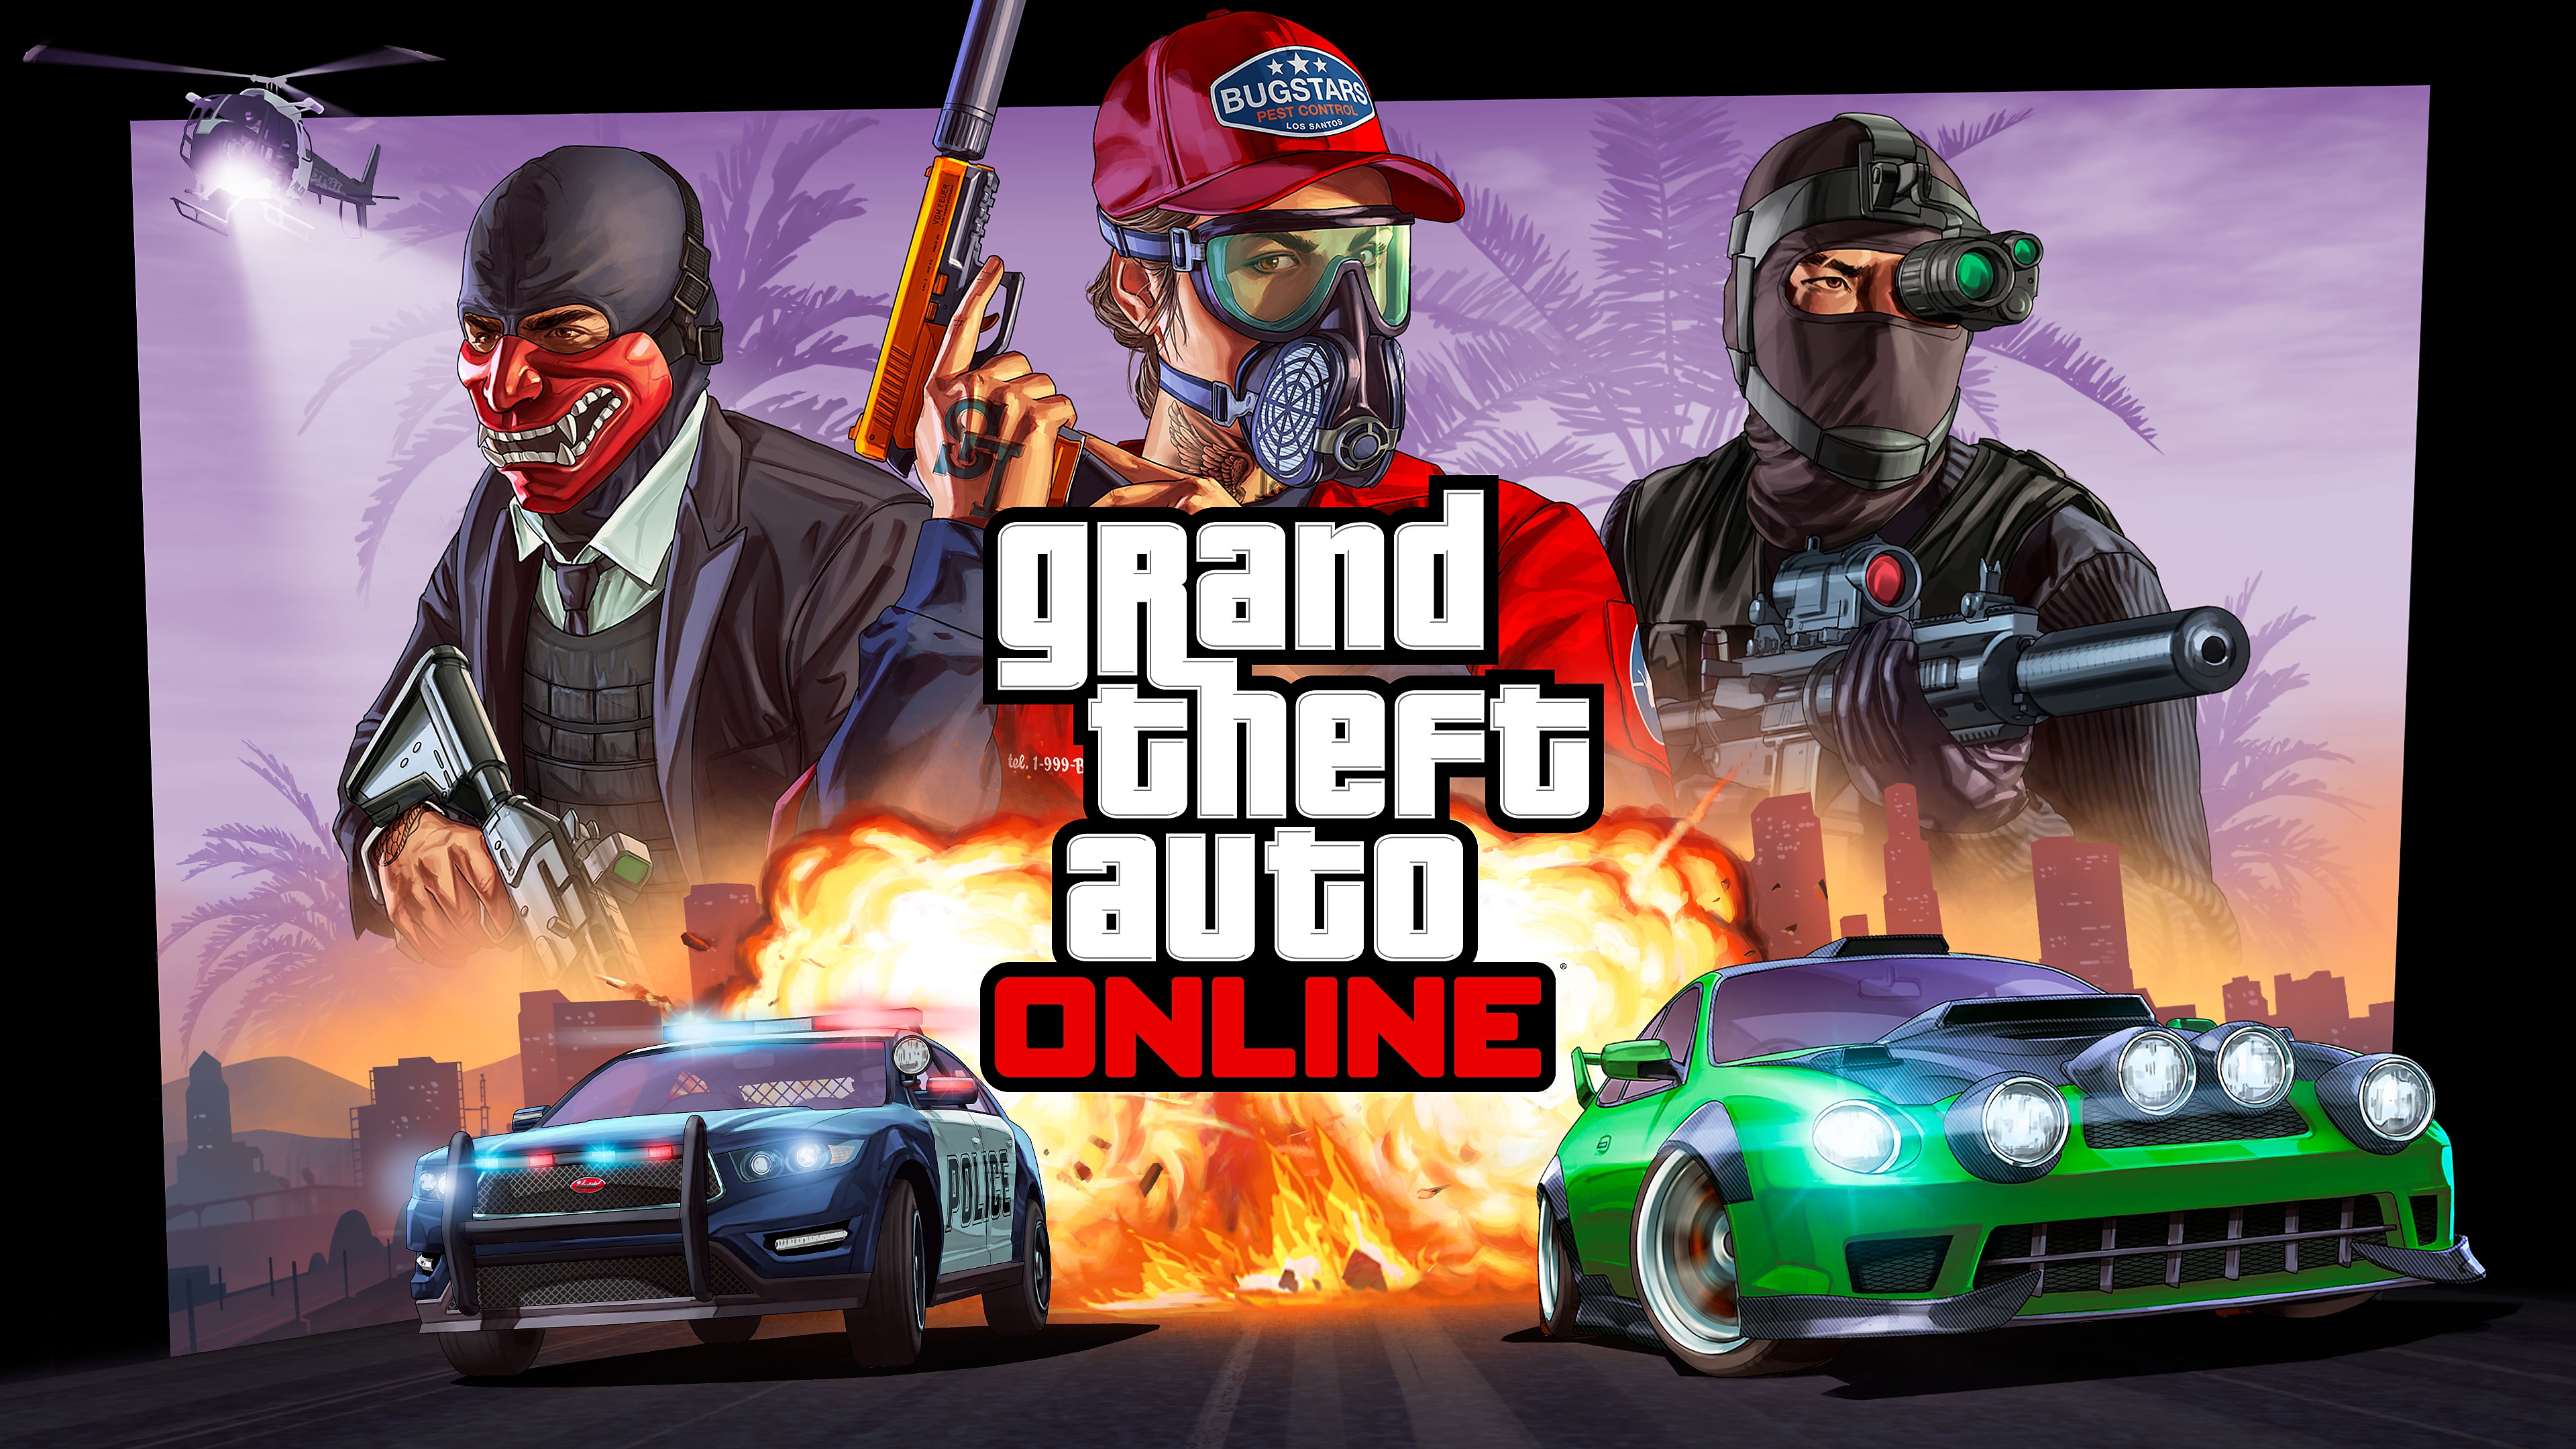 Grand Theft Auto Online fő grafika: utcai versenyautó, nyomában egy rendőrautó, felette három karakter.